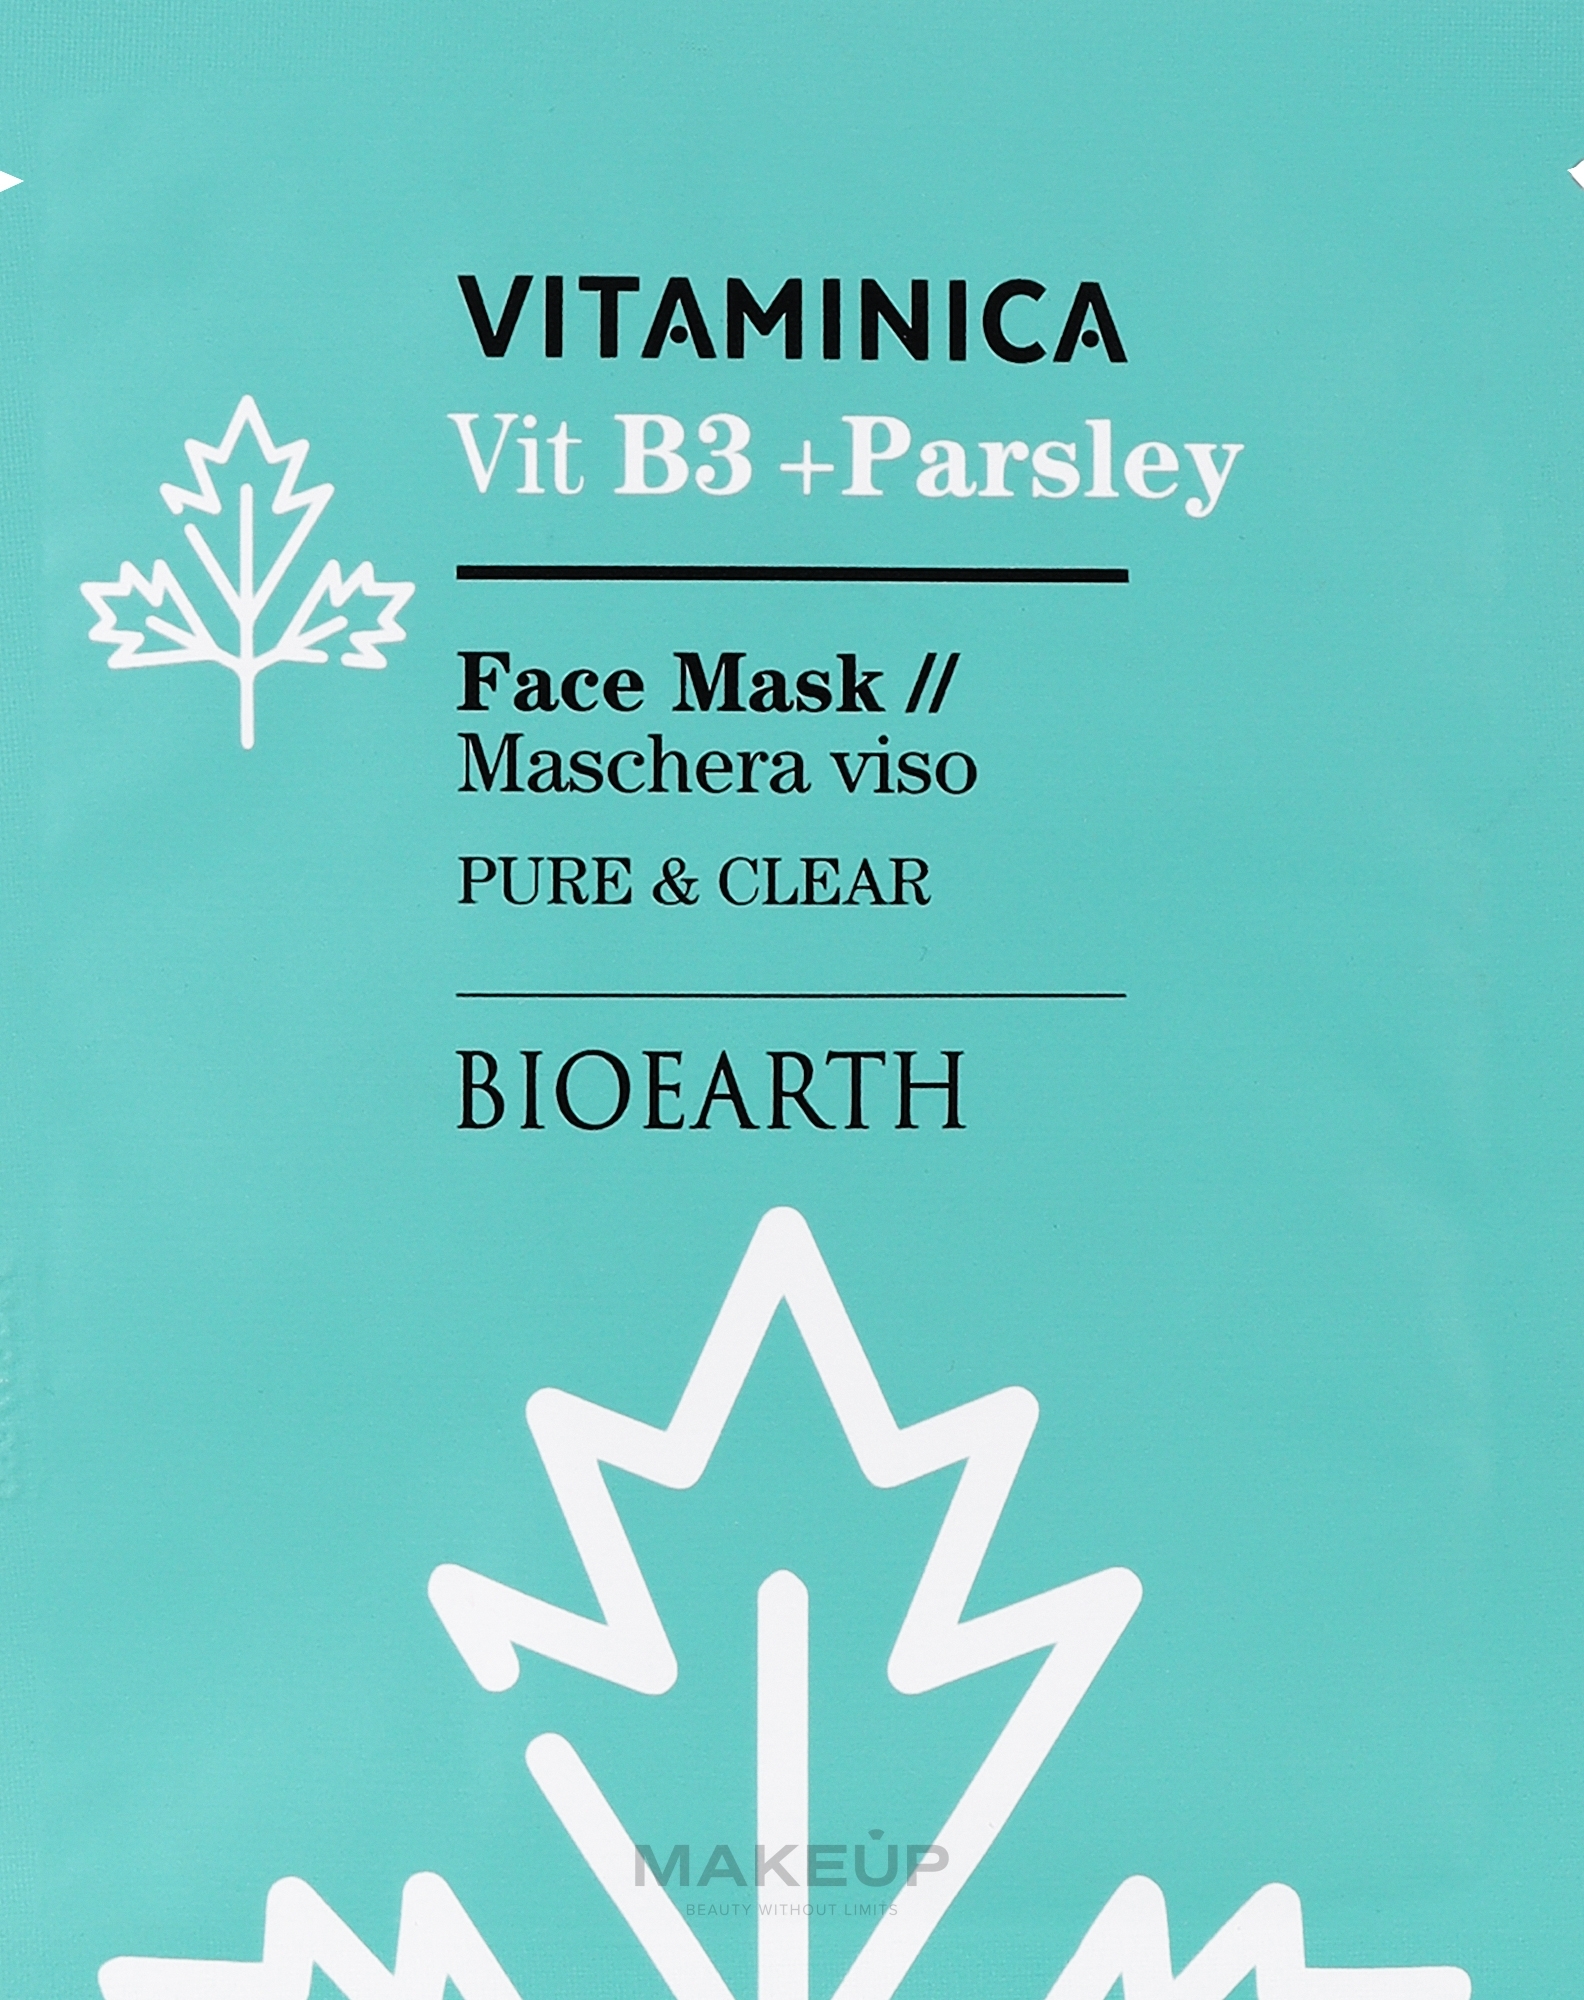 Маска целлюлозная очищающая и успокаивающая для чувствительной и комбинированной кожи лица - Bioearth Vitaminica Single Sheet Face Mask Vitb3 + Parsley — фото 15ml